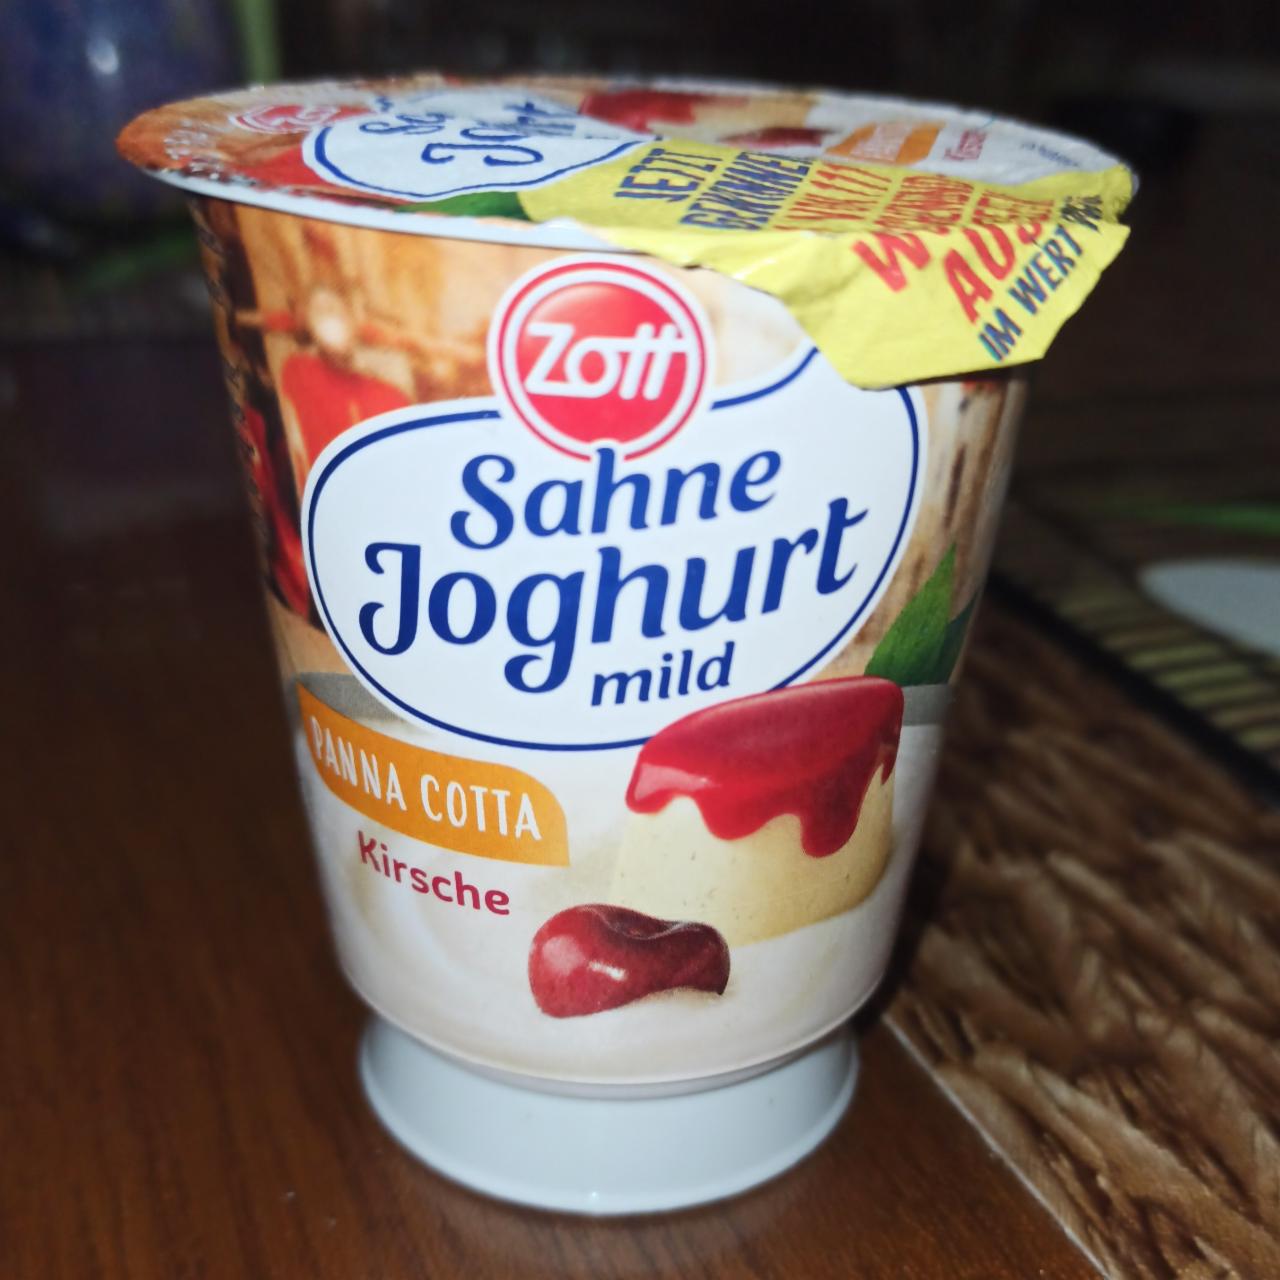 Fotografie - Sahne joghurt mild panna cotta kirsche Zott